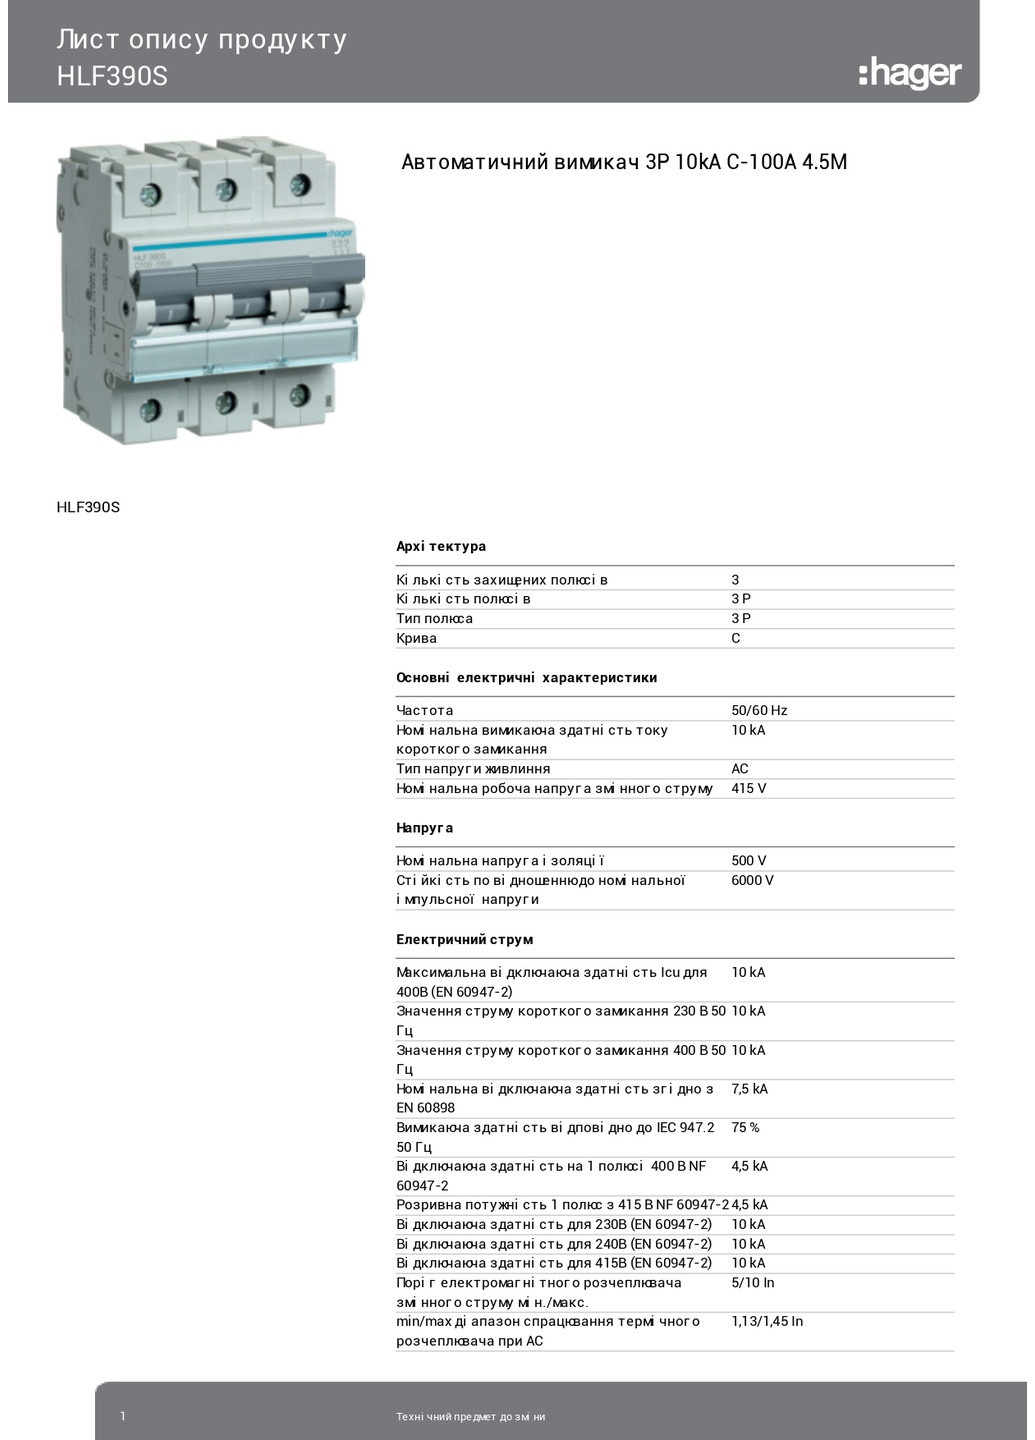 Вводный автомат трехполюсный 100А автоматический выключатель HLF390S 3P 10kA C100A 4,5M (3855) Hager (265535700)